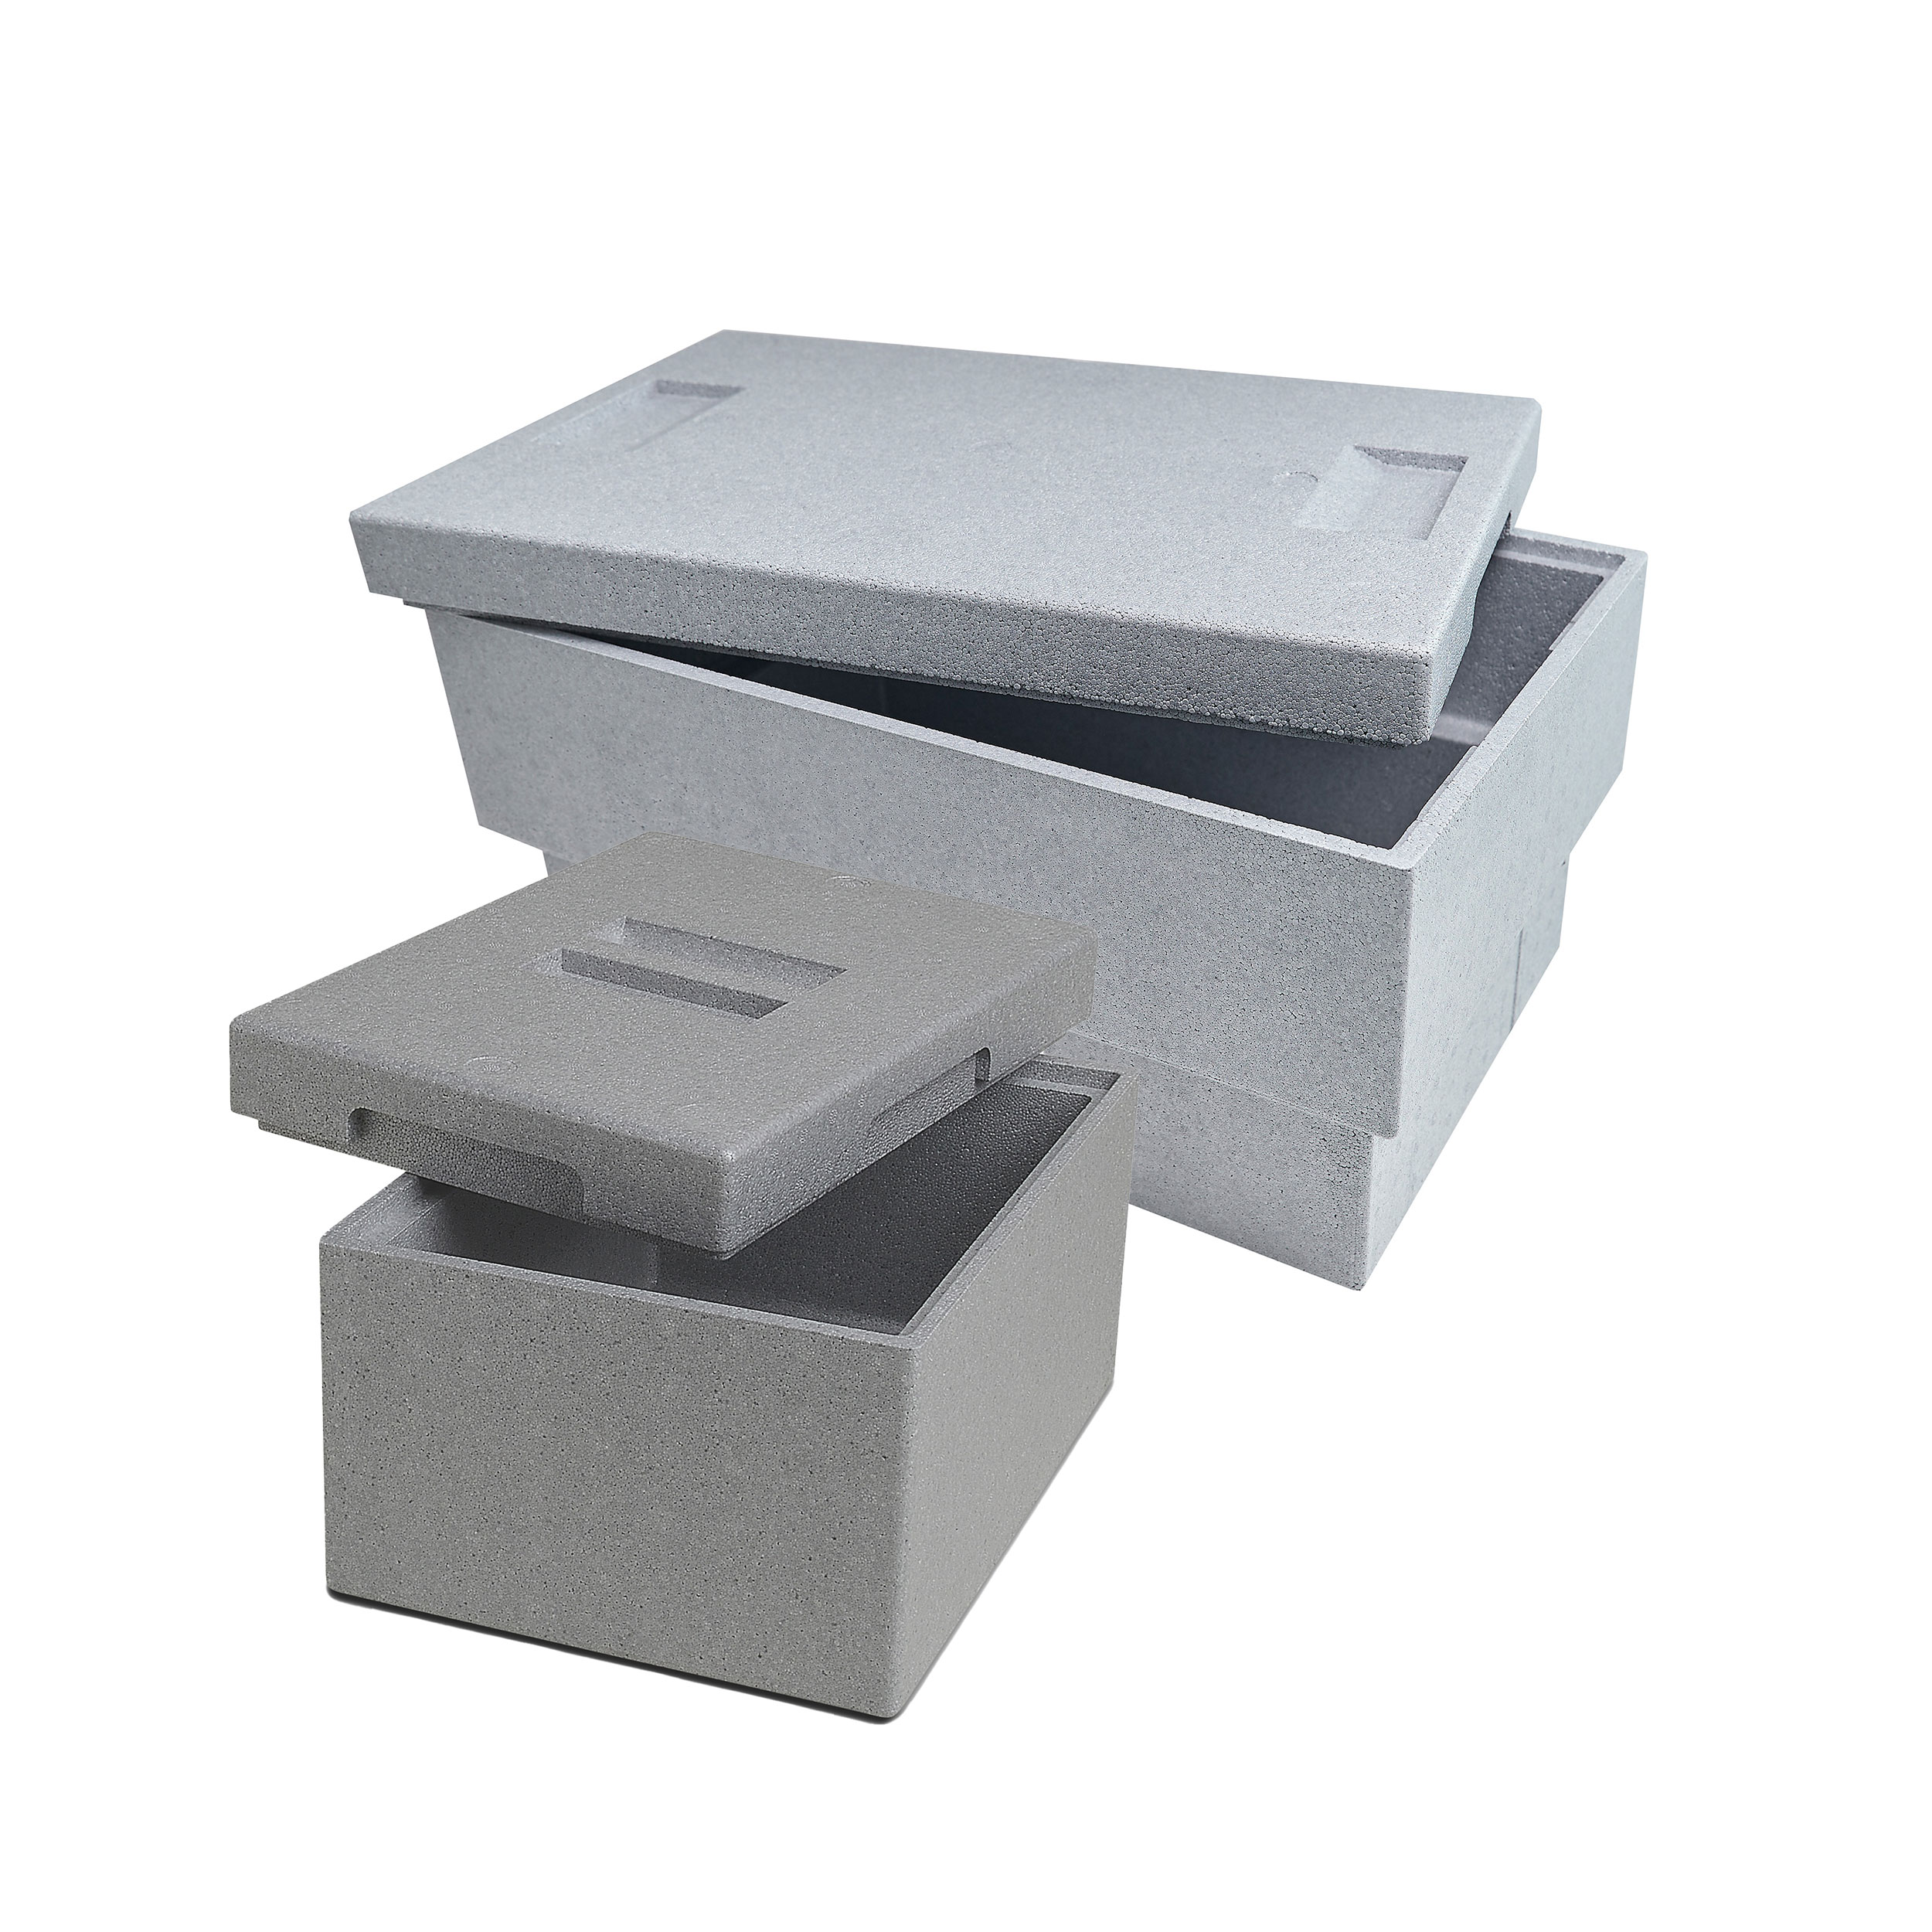 Climapor 2er Set Transportbox Plus und mini, grau, Volumen: 54,5 x 35 x 30 cm (32 Liter), Volumen: 25,5 x 35 x 21 cm (9 Liter), Wandstärke: 1,75 cm bzw. 2 cm